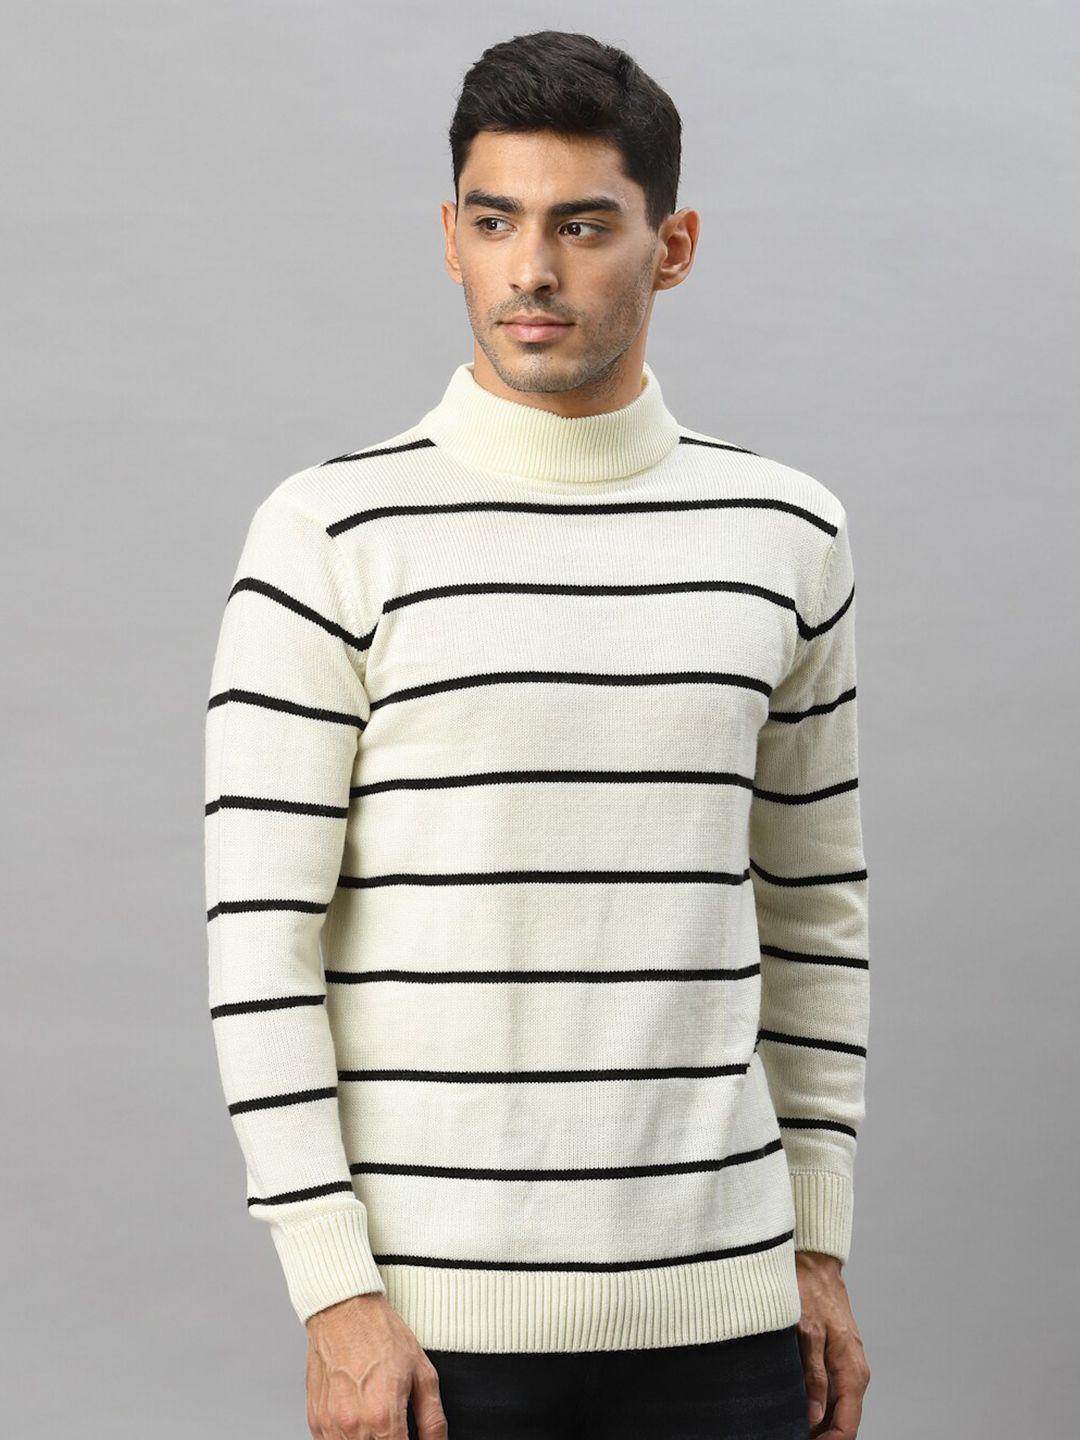 style quotient men off white & black striped sweater vest